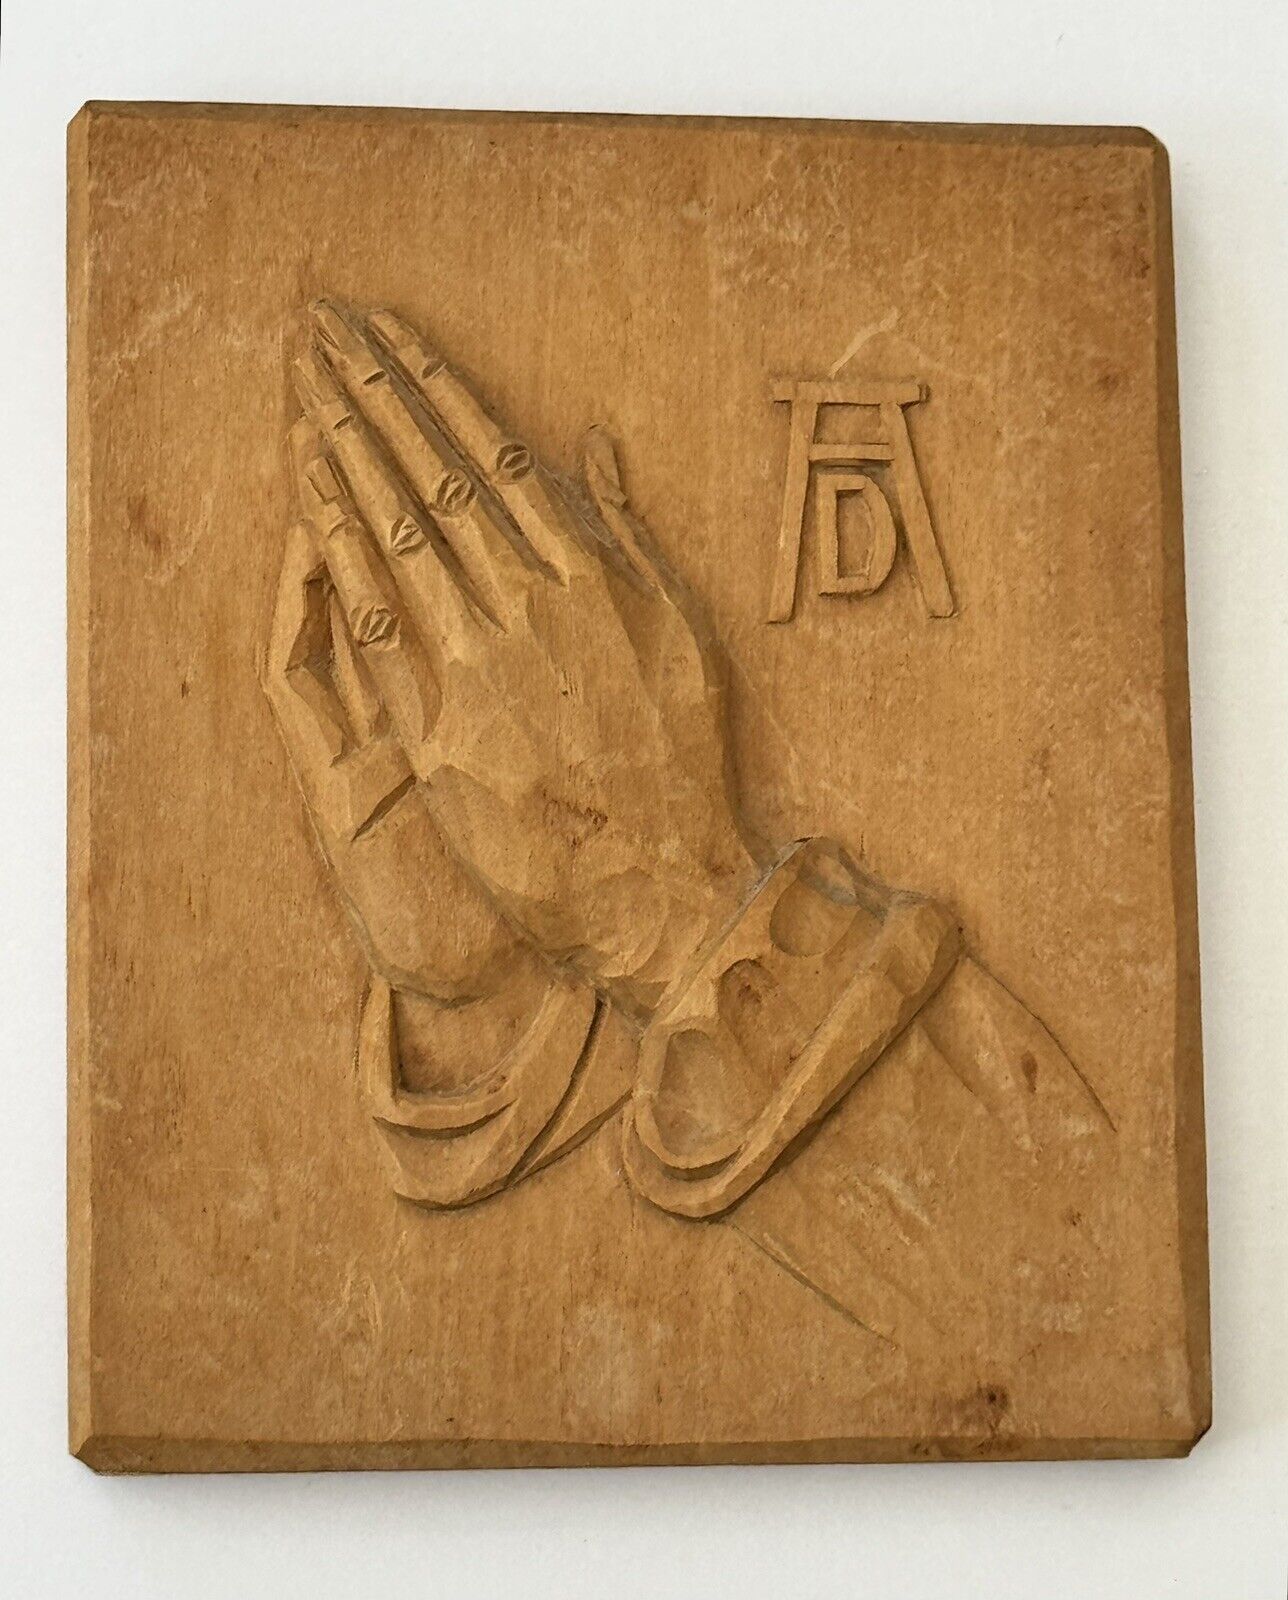 Oberammergau Wood Carved Praying Hands Vintage Germany Albrecht Dürer 4.5x 5.25”